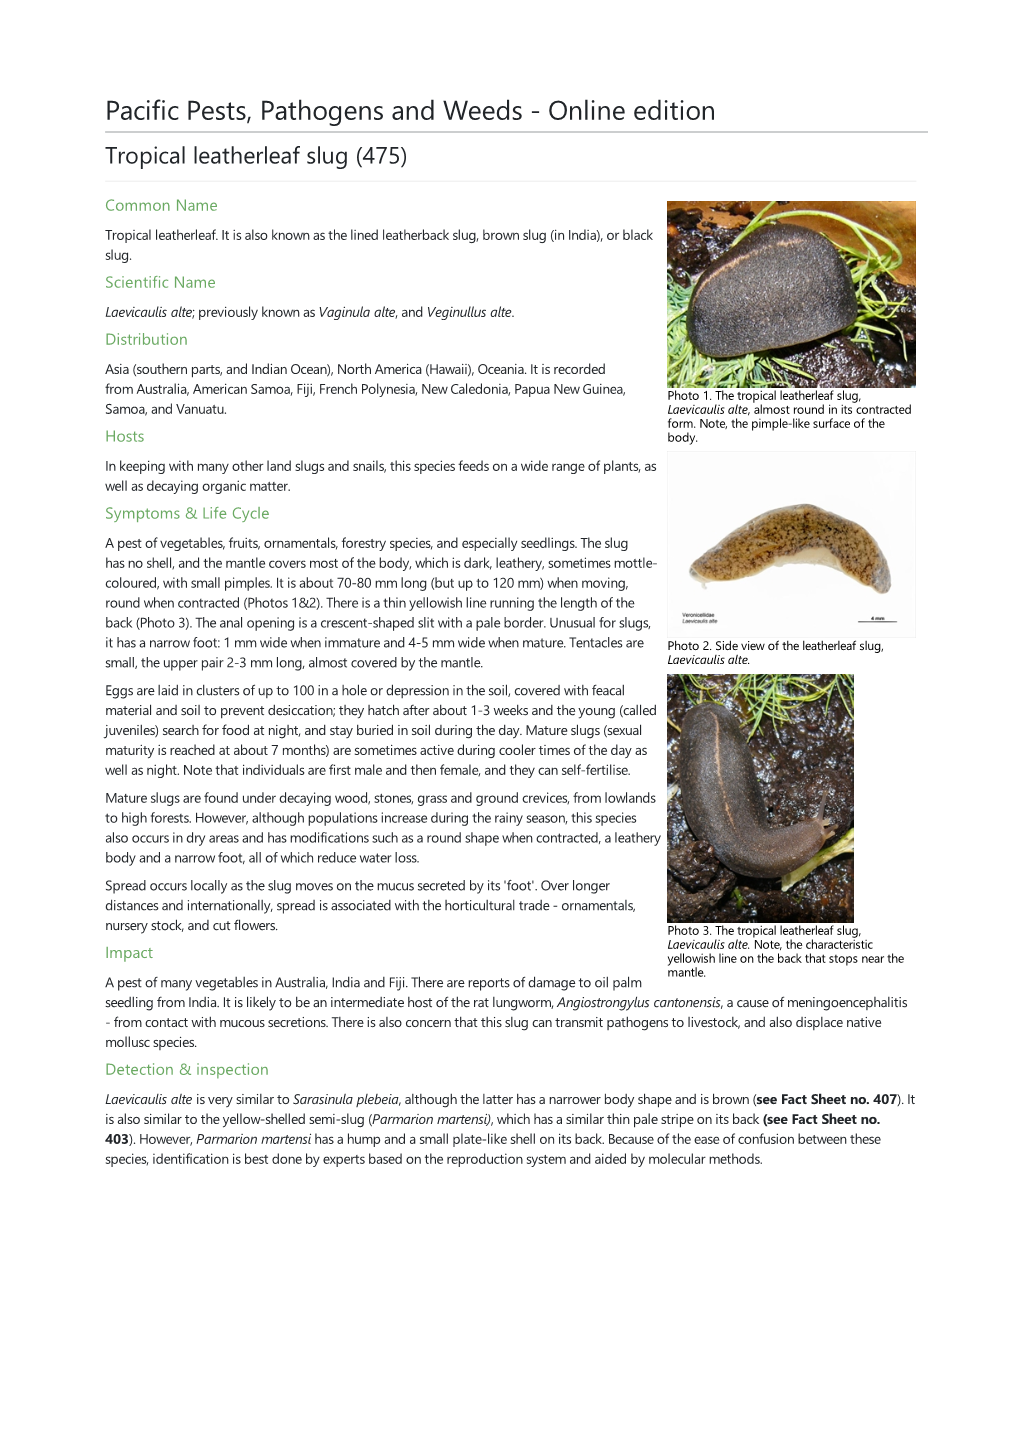 Tropical Leatherleaf Slug (475)